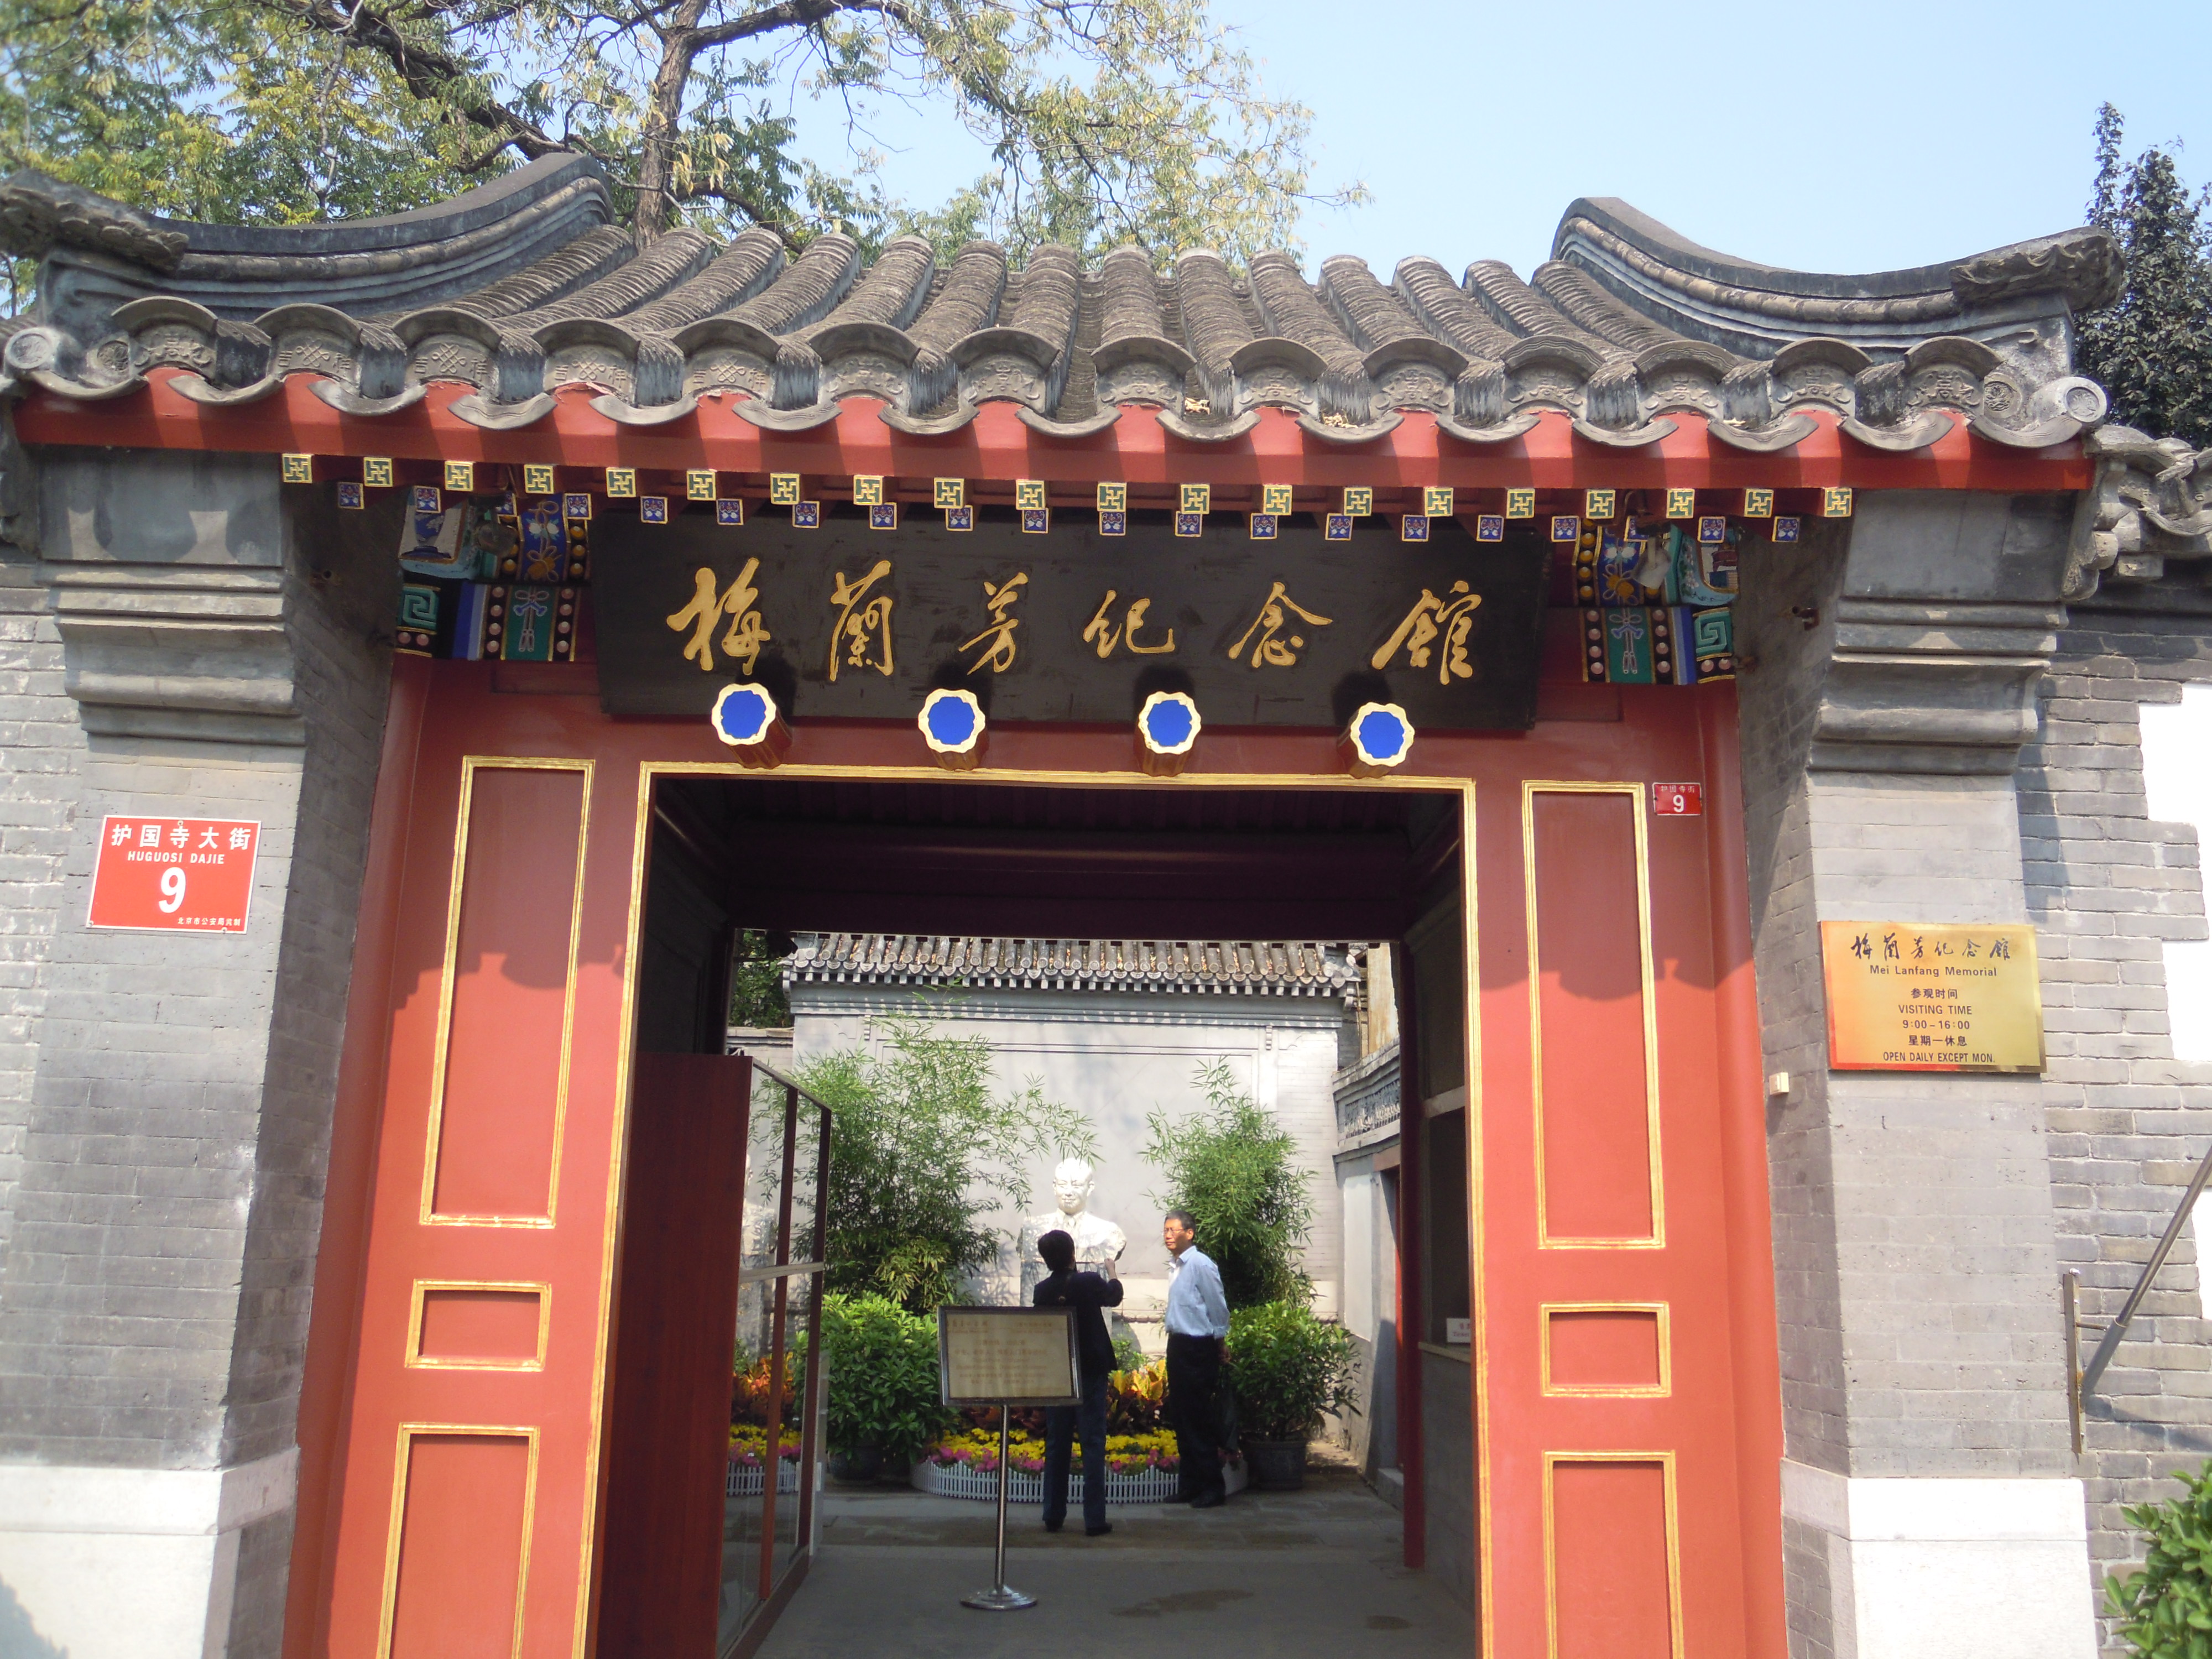 【携程攻略】北京梅兰芳纪念馆适合单独旅行旅游吗,梅兰芳纪念馆单独